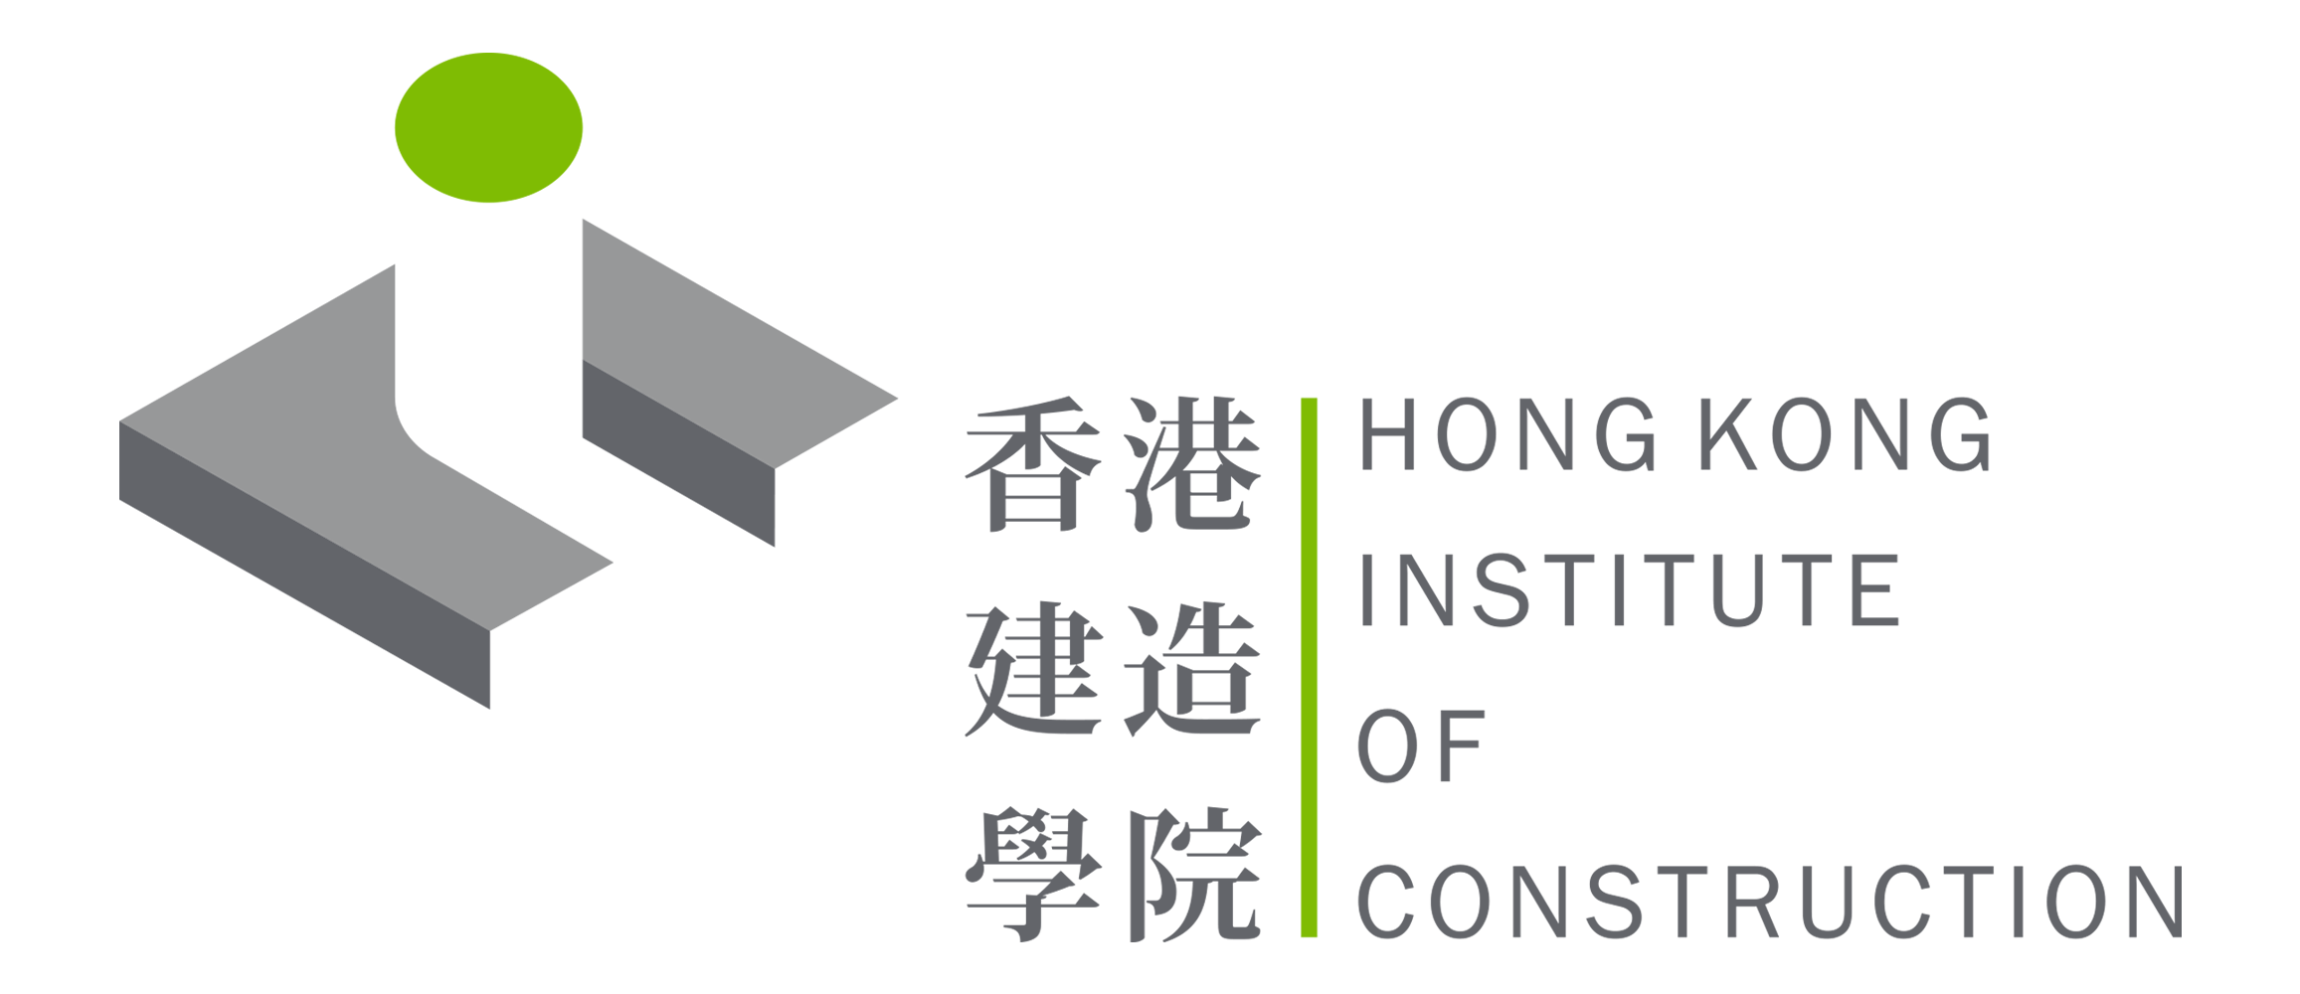 本頁圖片/檔案 - hkic_logo (2)